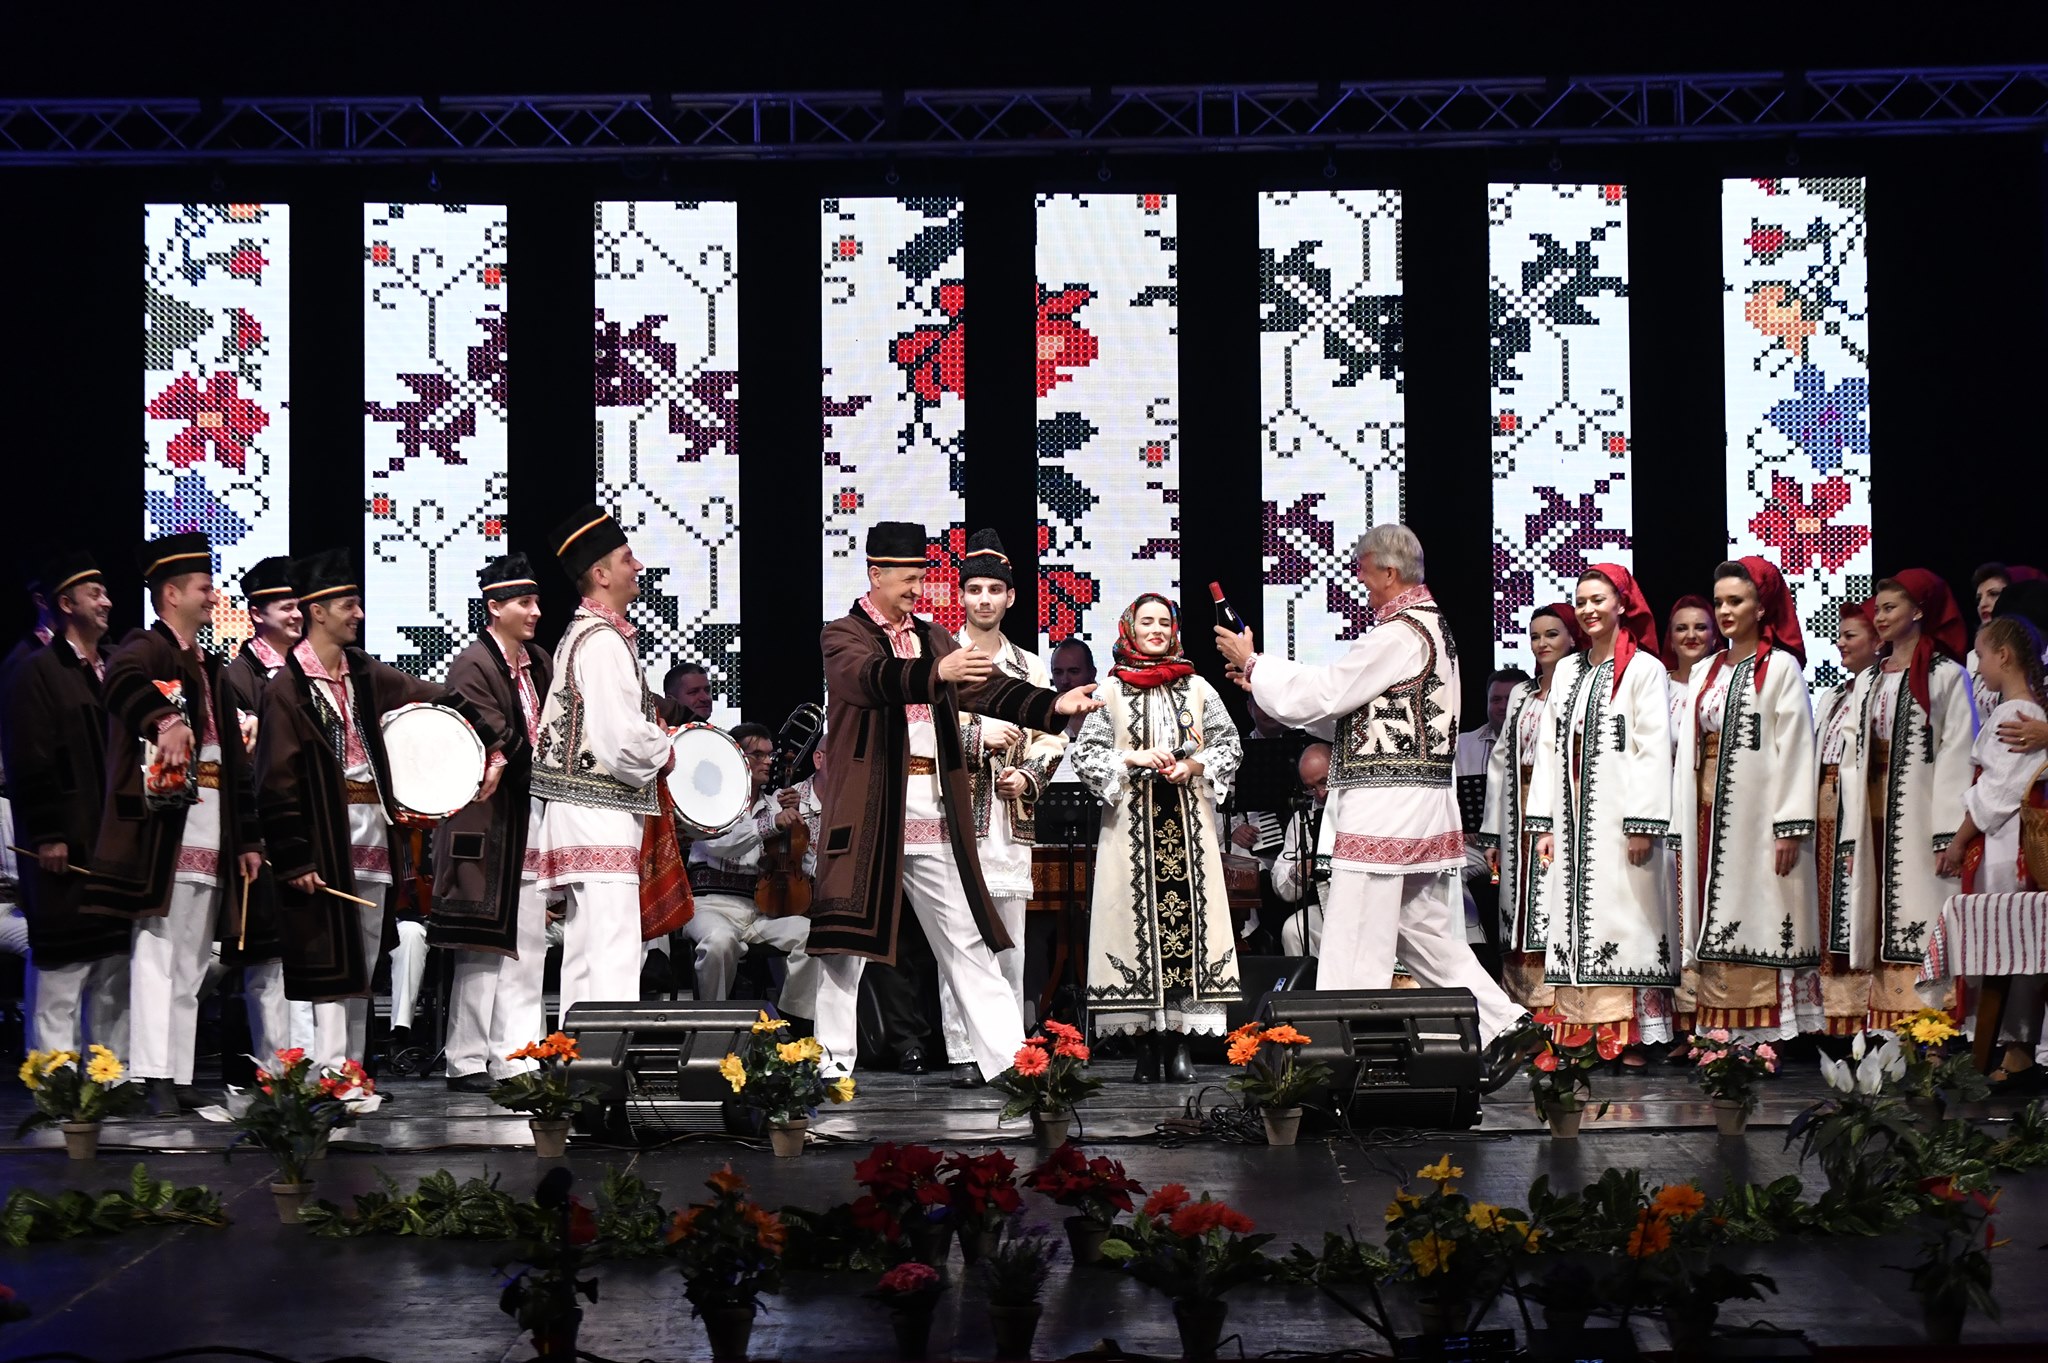 Ansamblul Profesionist Banatul și invitații săi pe scena Festivalului „Parcul Crăciunului” la Muzeul Satului Bănățean din Timișoara